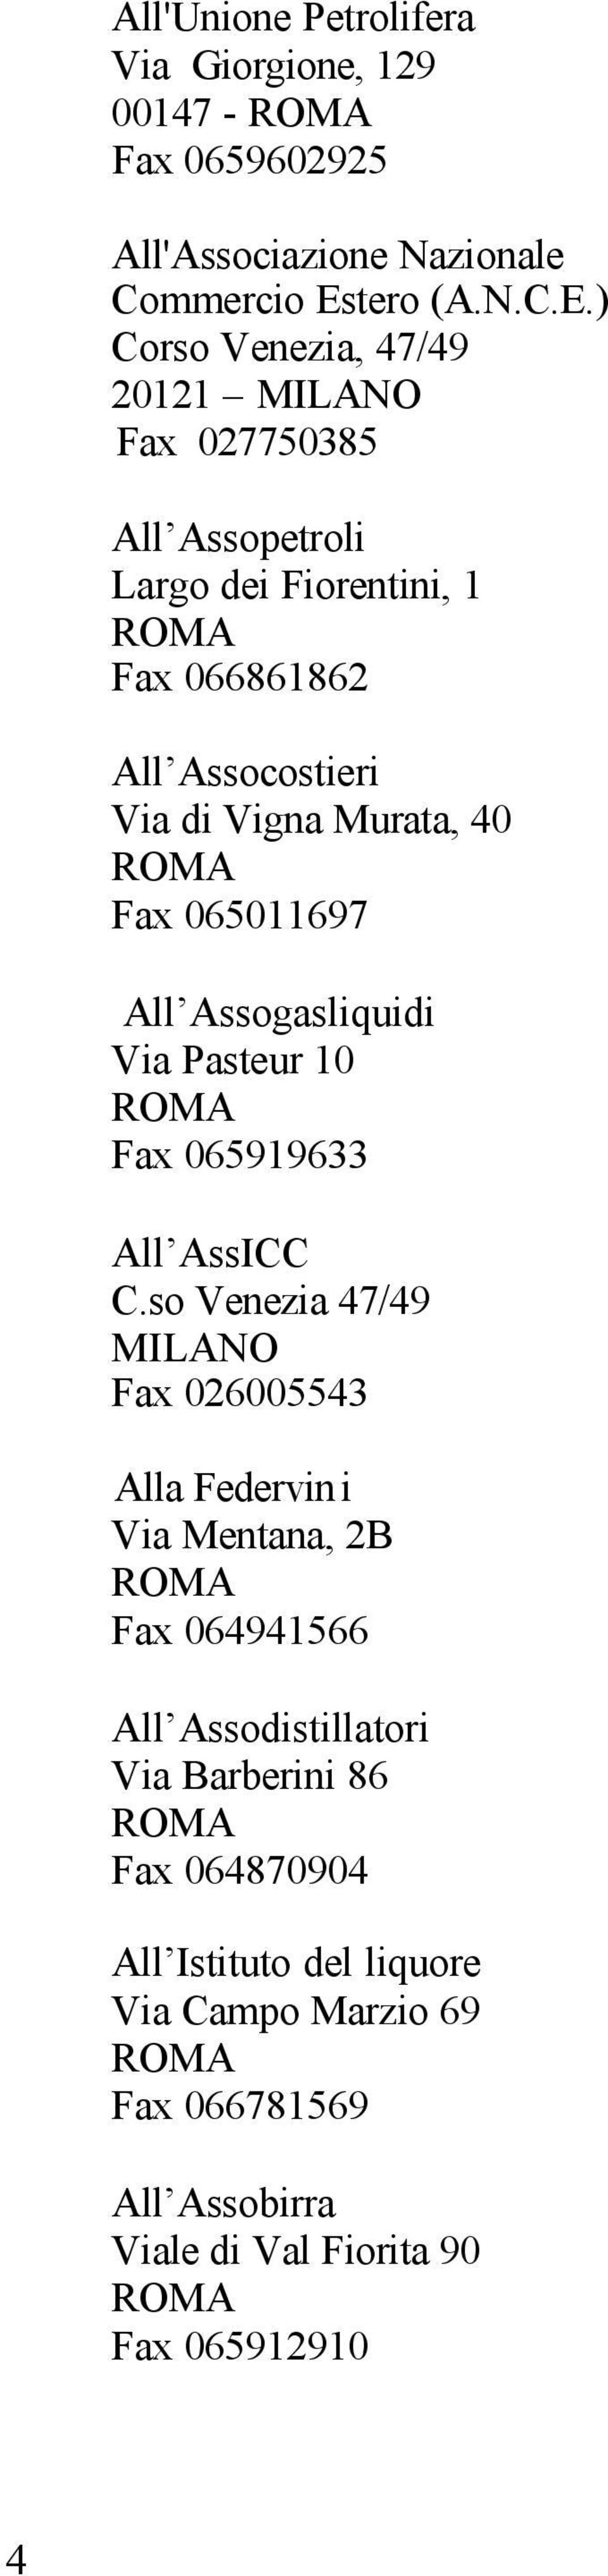 ) Corso Venezia, 47/49 20121 MILANO Fax 027750385 All Assopetroli Largo dei Fiorentini, 1 Fax 066861862 All Assocostieri Via di Vigna Murata, 40